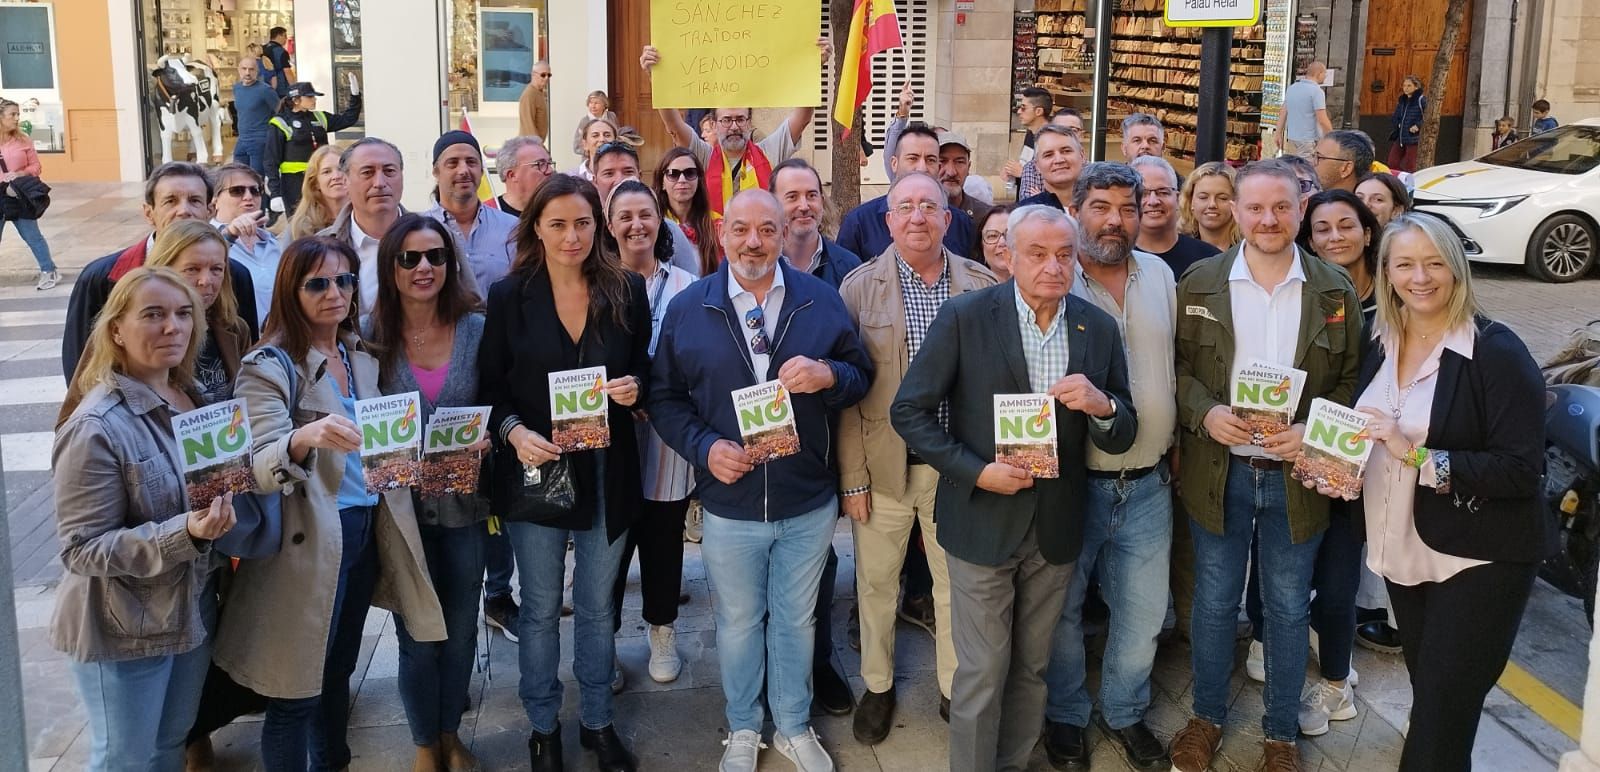 Representantes de Vox Baleares manifestándose contra la amnistía.